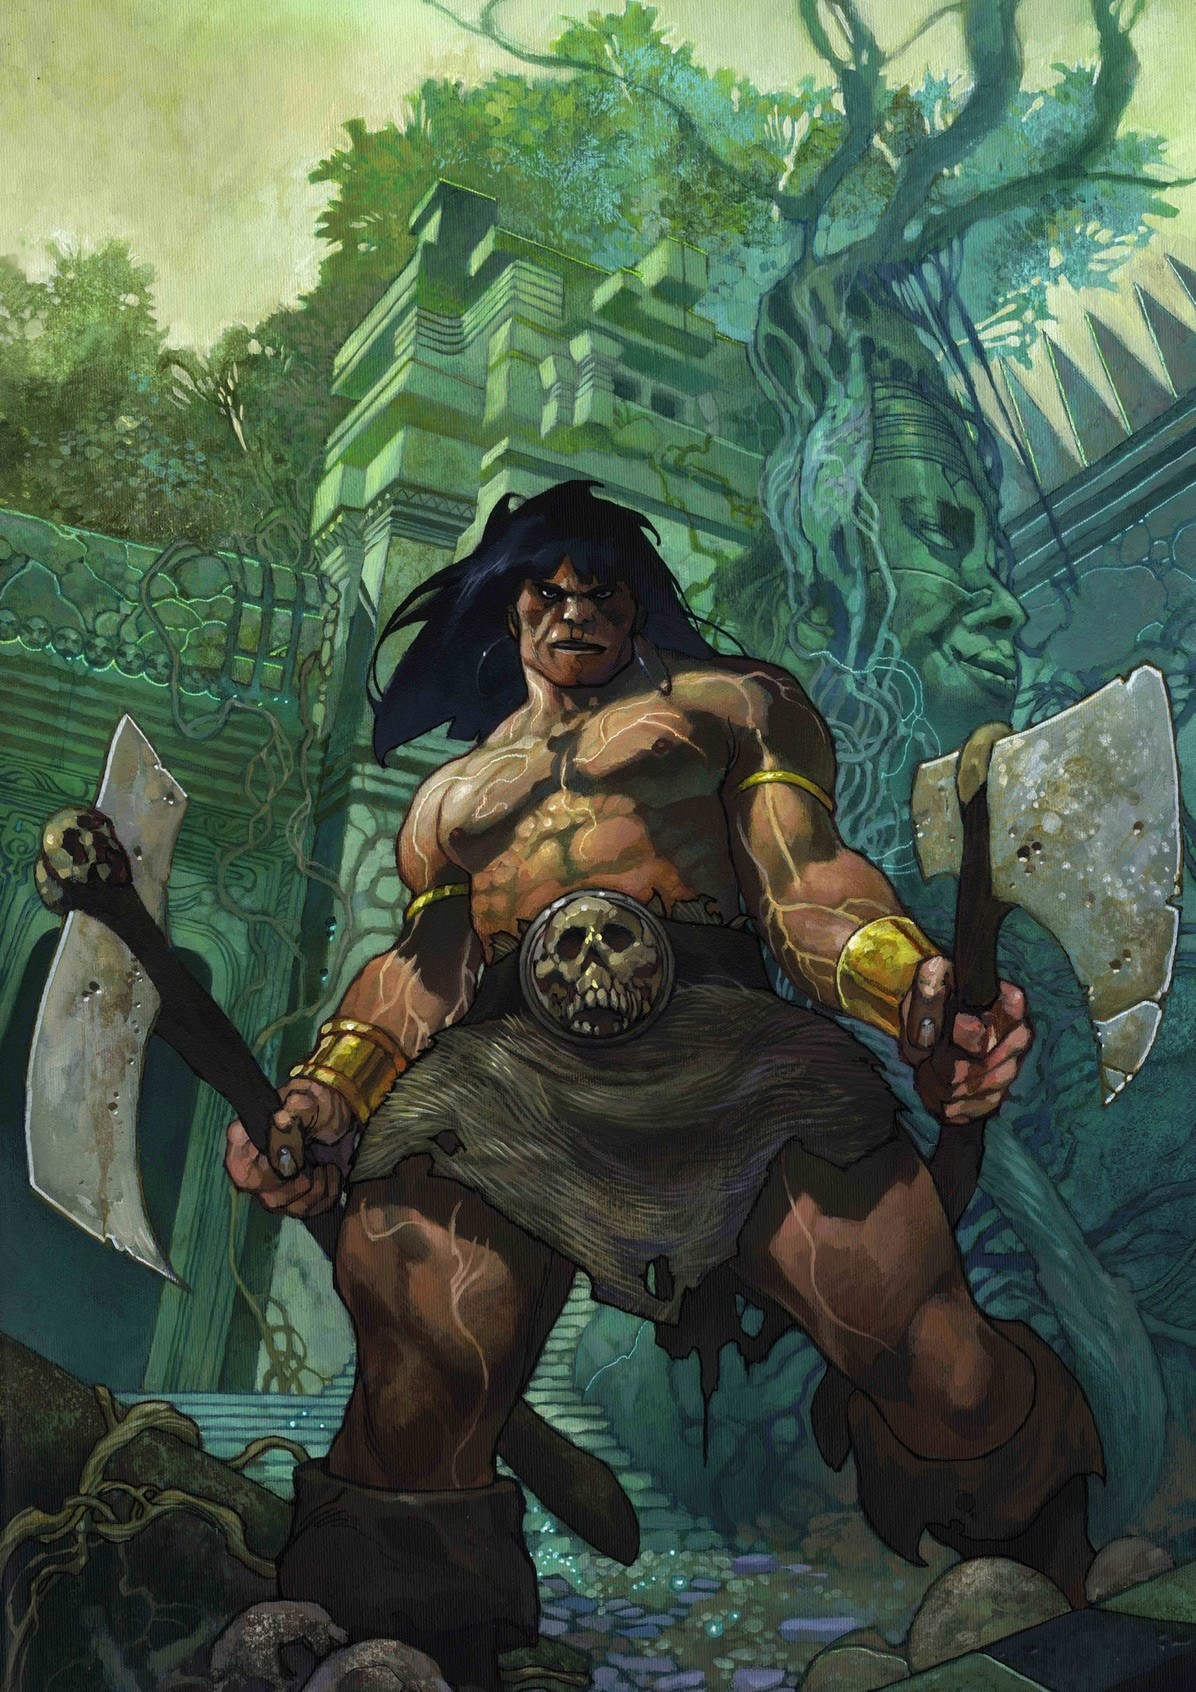 The Savage Sword of Conan Vol II di Simone Bianchi